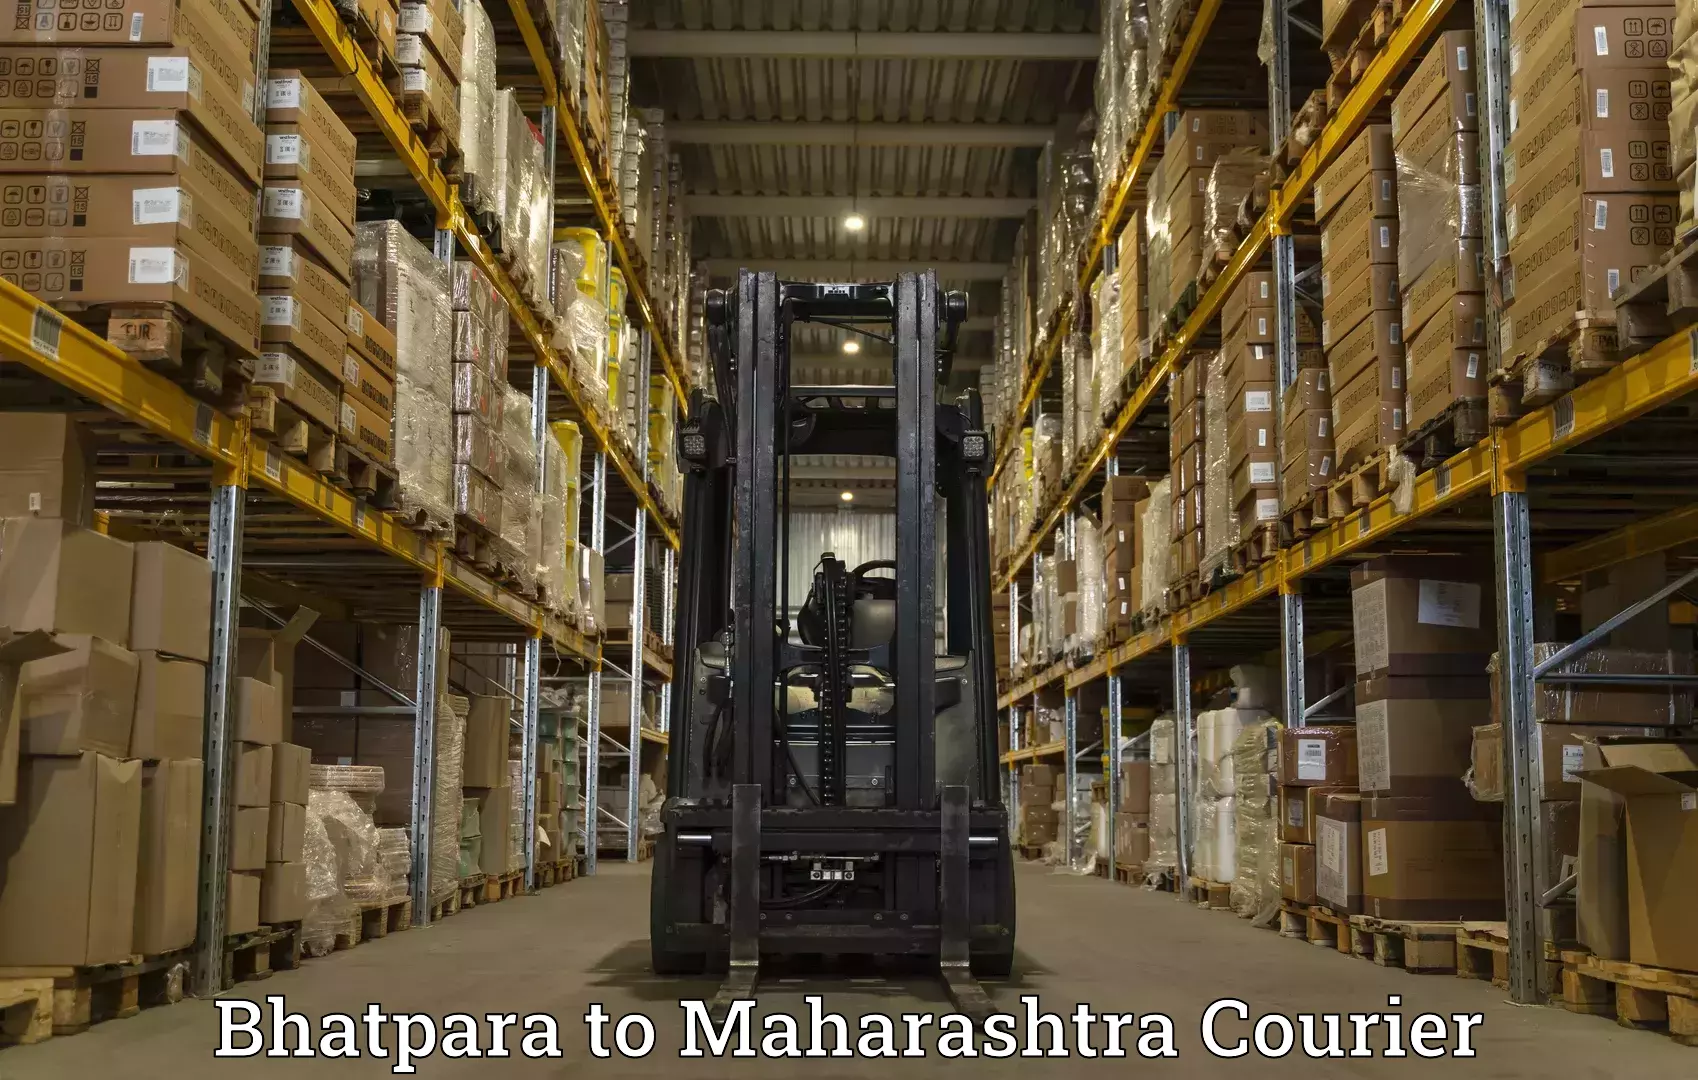 Cargo delivery service Bhatpara to Maharashtra